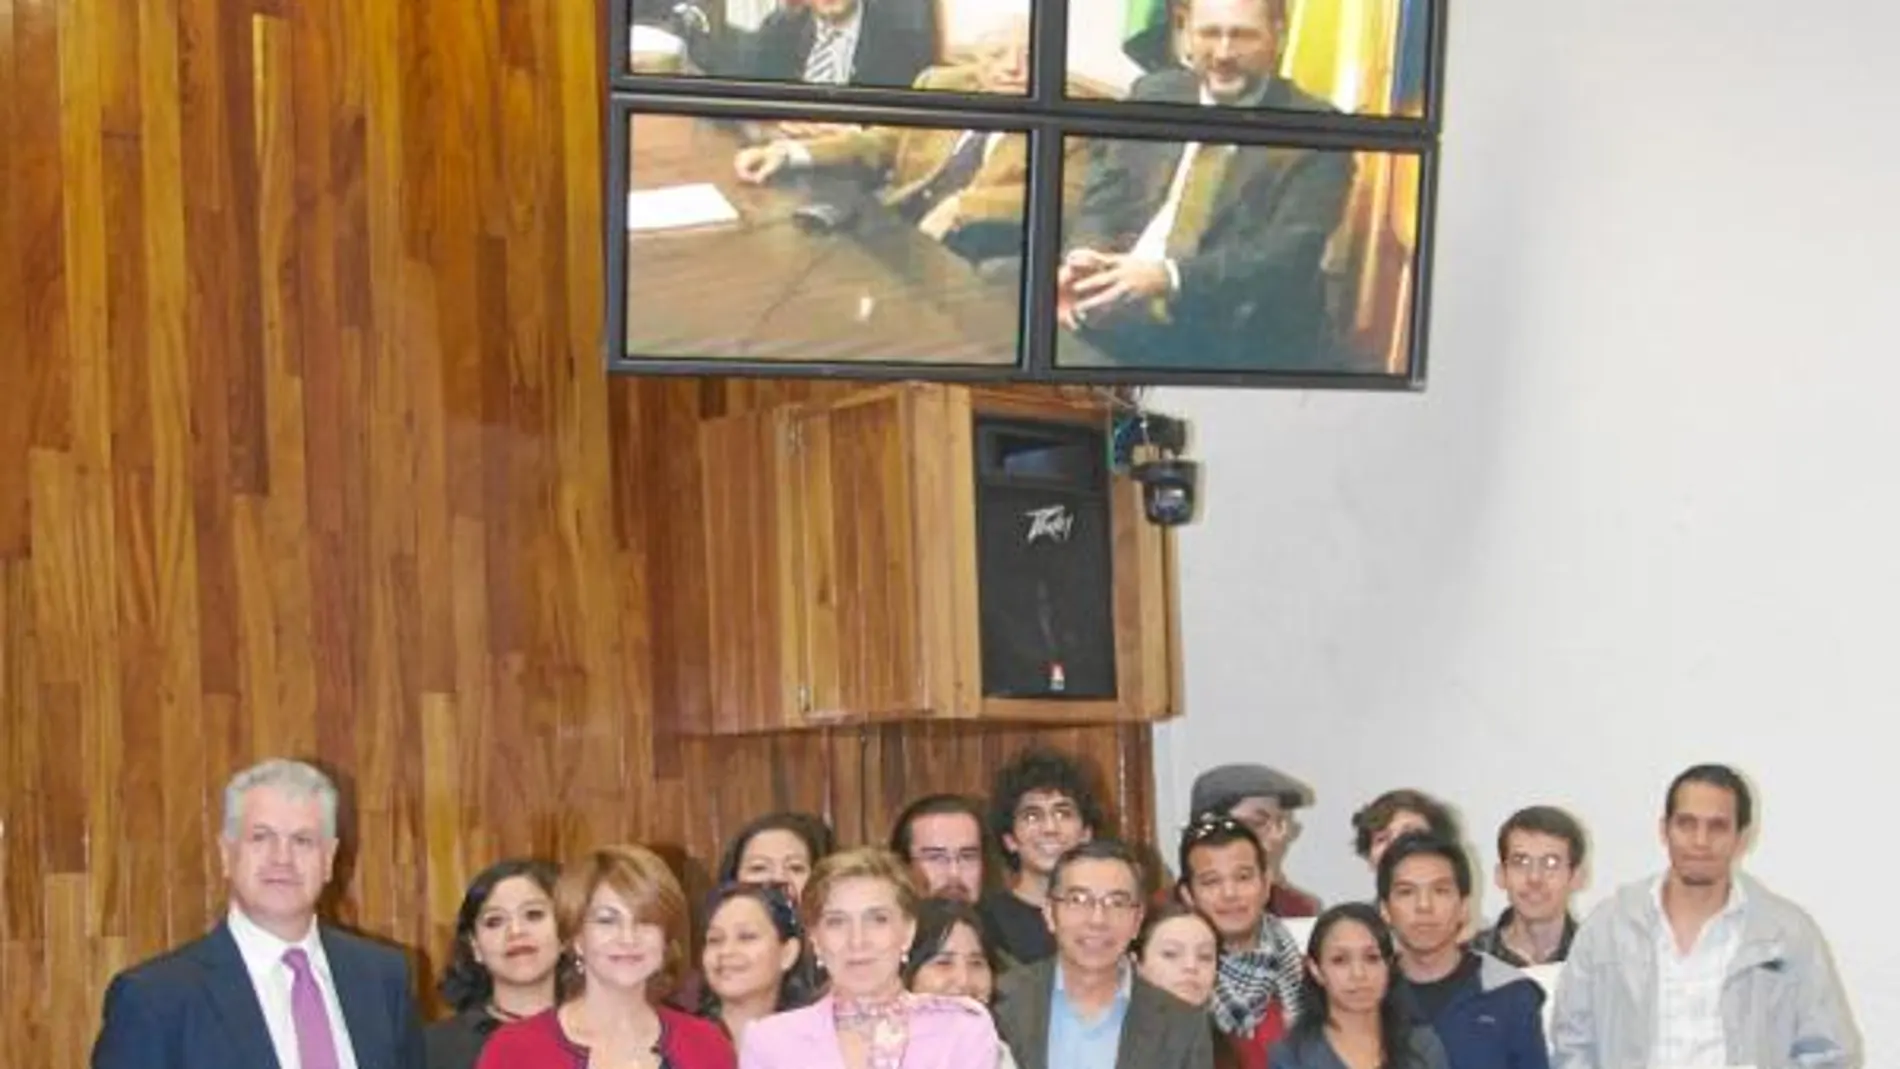 Salgueiro y Jiménez Lozano -a través de la teleconferencia- junto a los alumnos diplomados en México